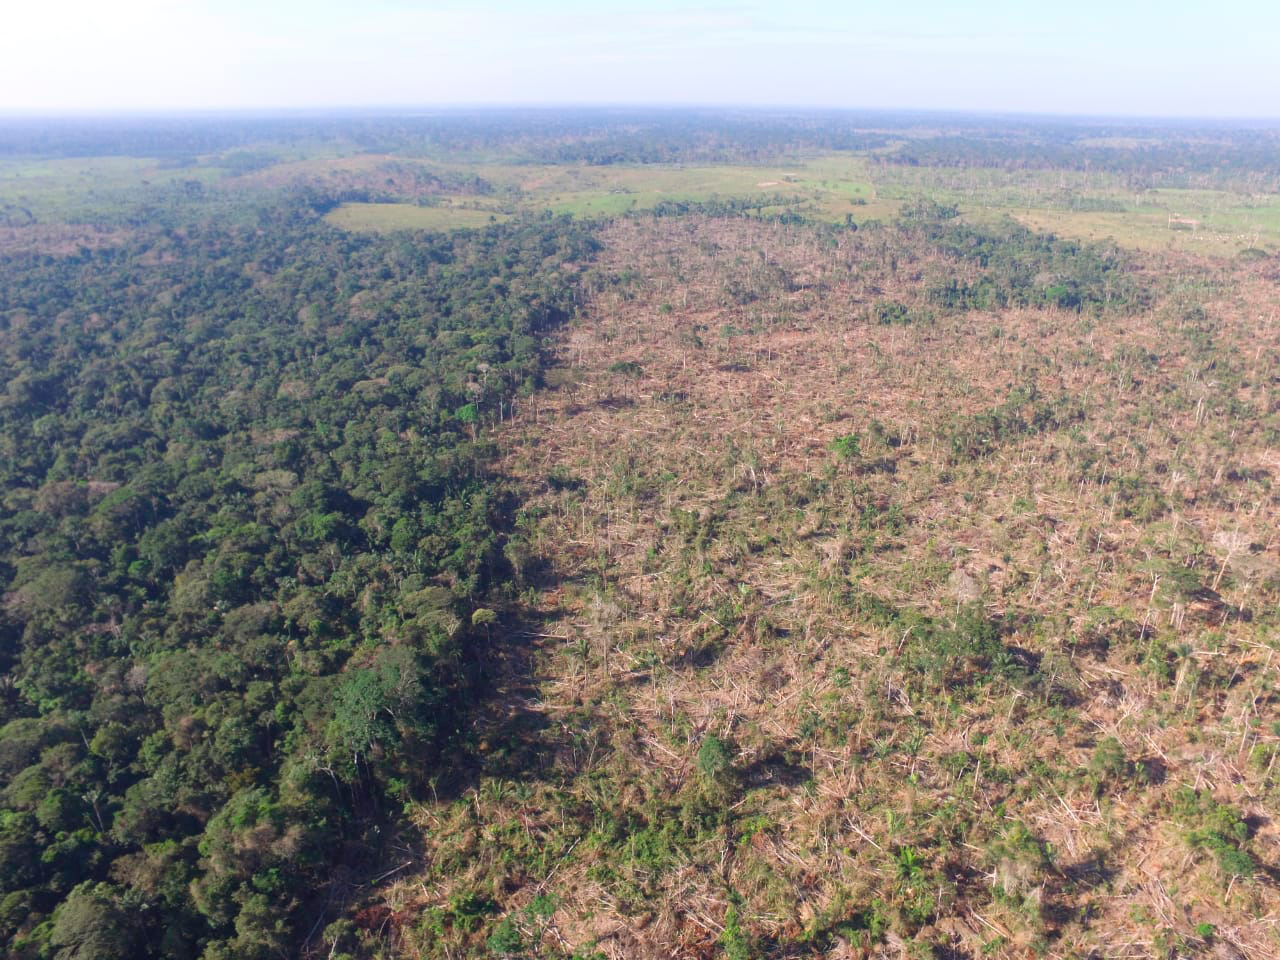 Deforestación en San José del Guaviare, capital del departamento. Fuente: Corporación para el Desarrollo Sostenible del Norte y el Oriente Amazónico (CDA)